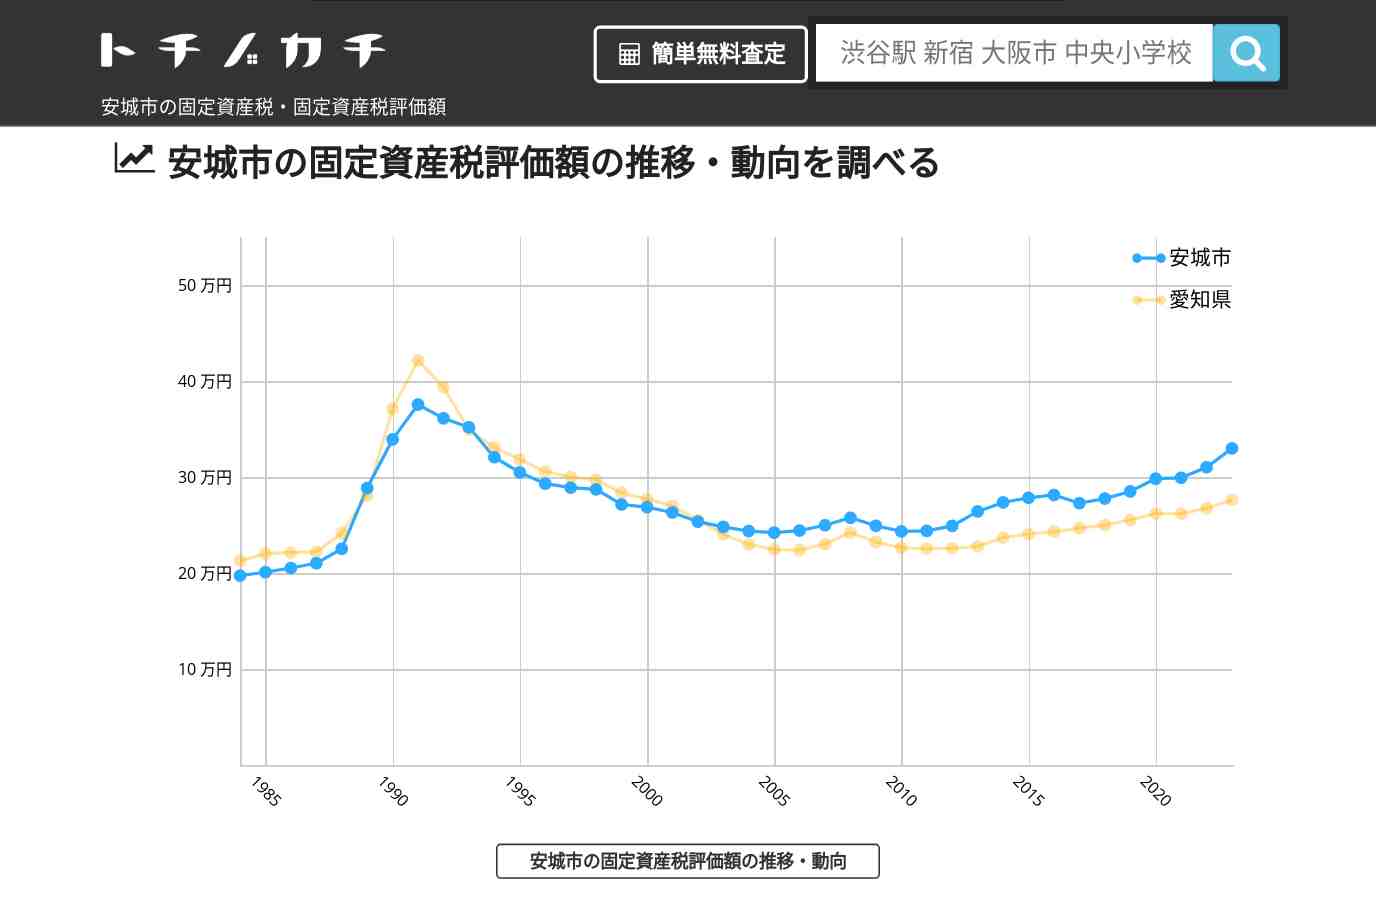 明祥中学校(愛知県 安城市)周辺の固定資産税・固定資産税評価額 | トチノカチ